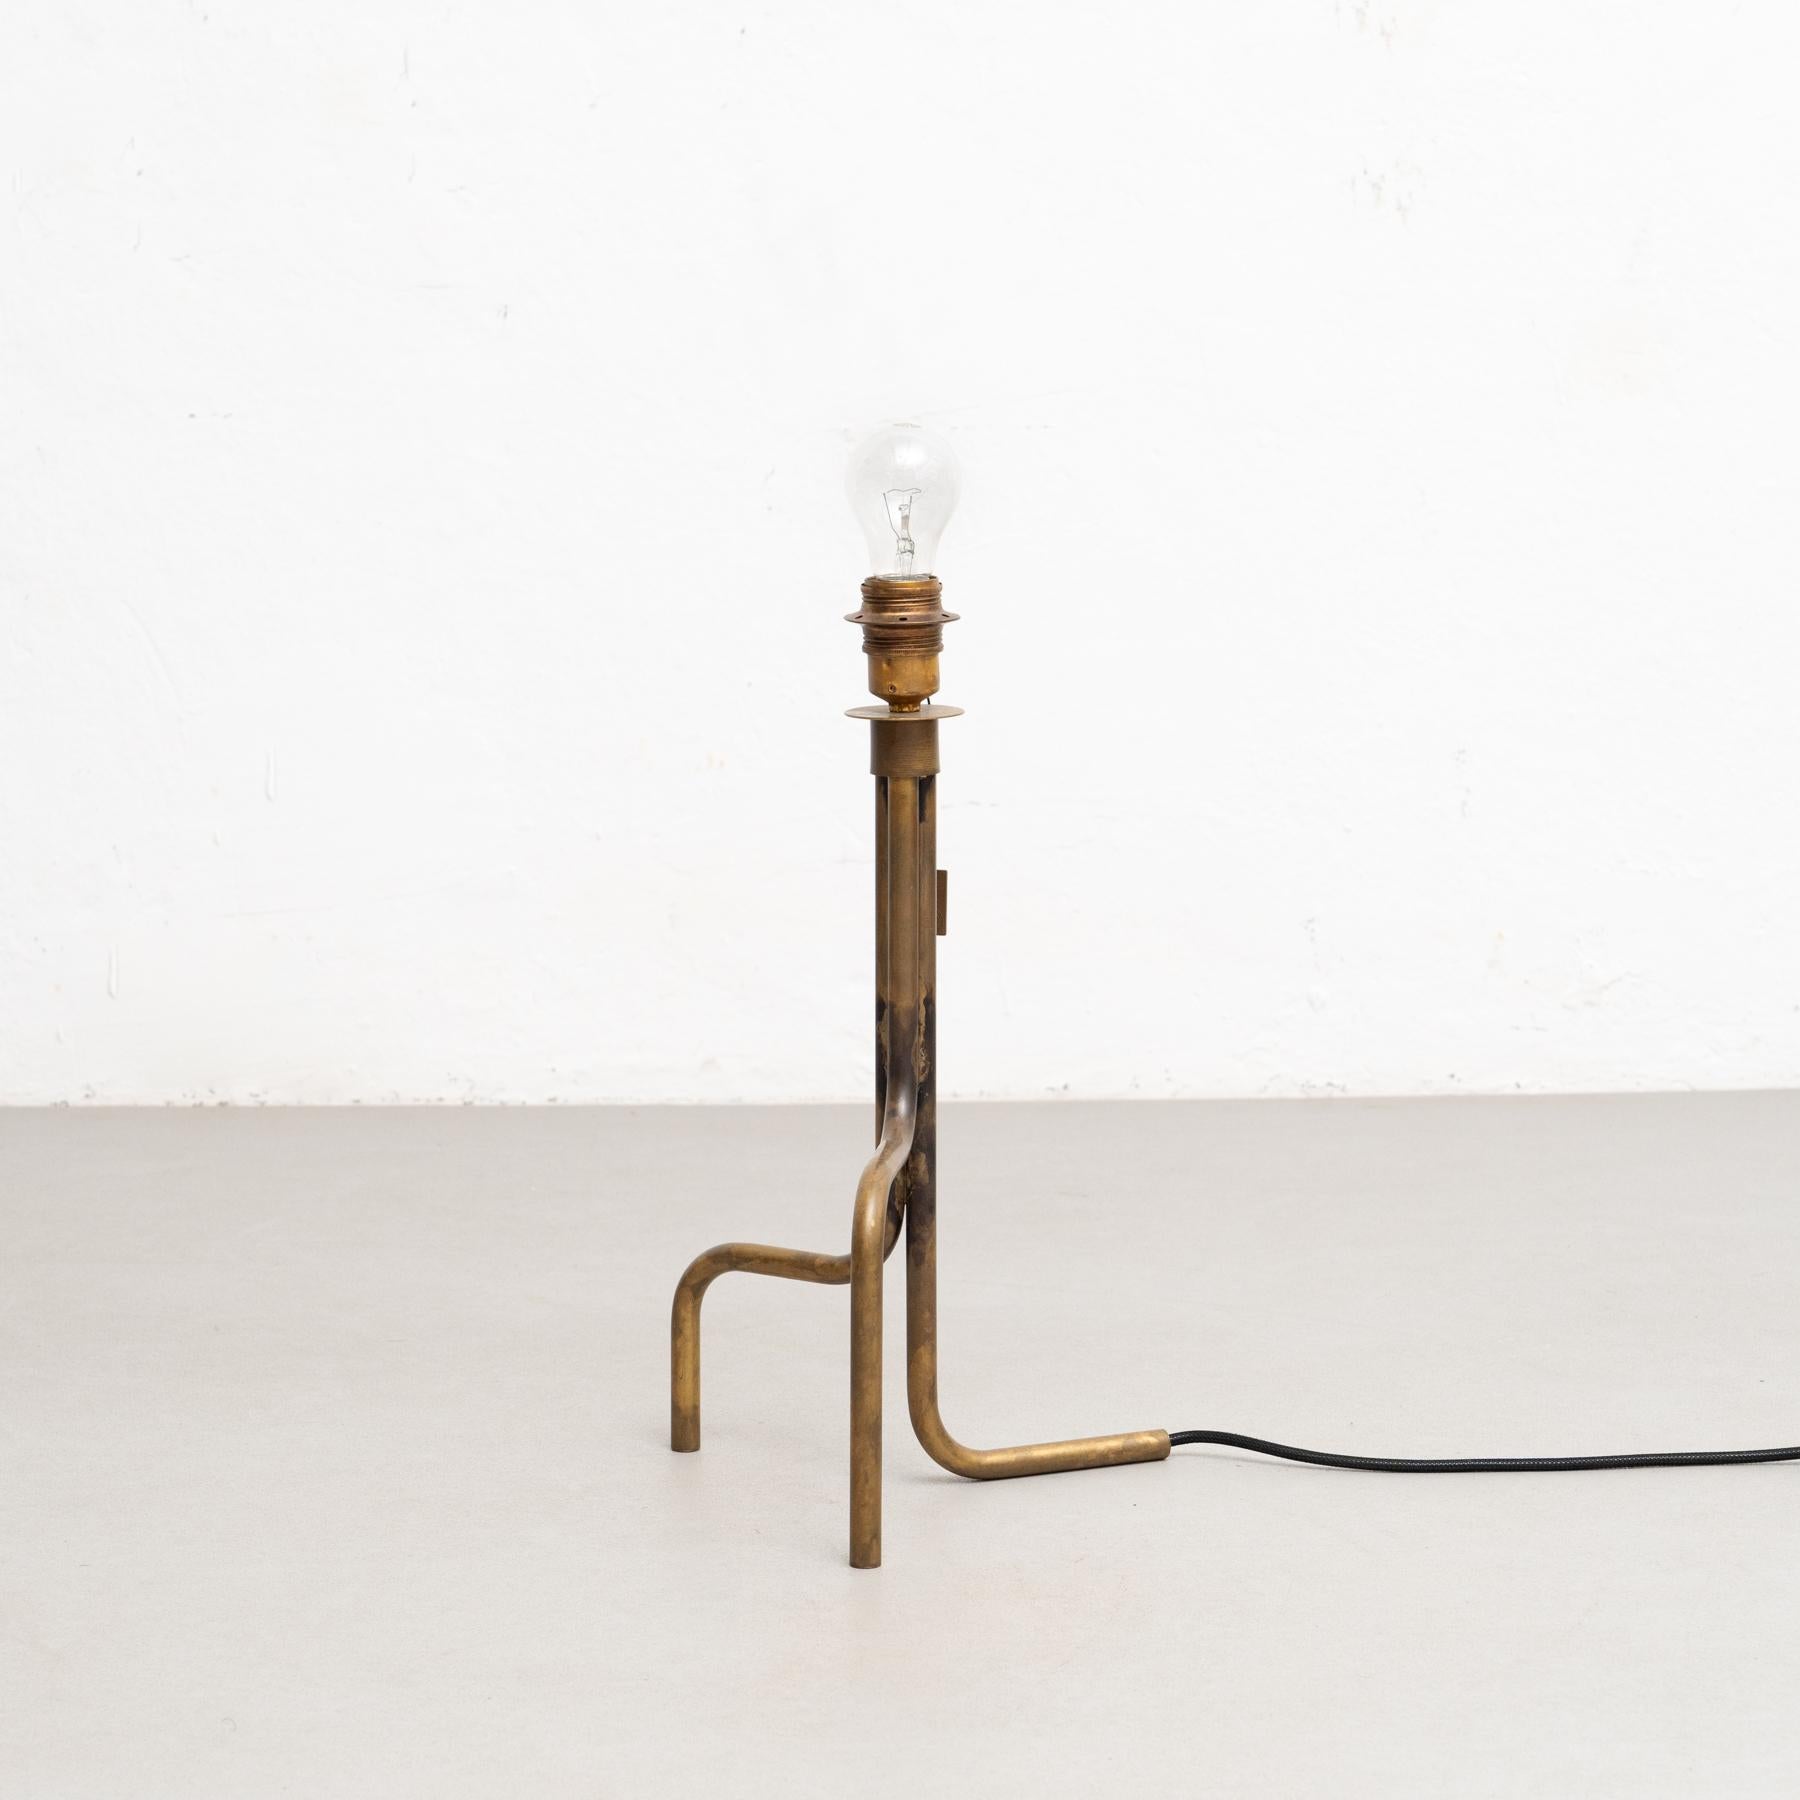 Lampe de table modèle Strapatz conçue par Sabina Grubbeson et fabriquée par Konsthantverk. 

Presque une petite œuvre d'art en soi. Forme vivante et belle signée Sabina Grubbeson.

La production de lampes, d'appliques et de lampadaires est réalisée